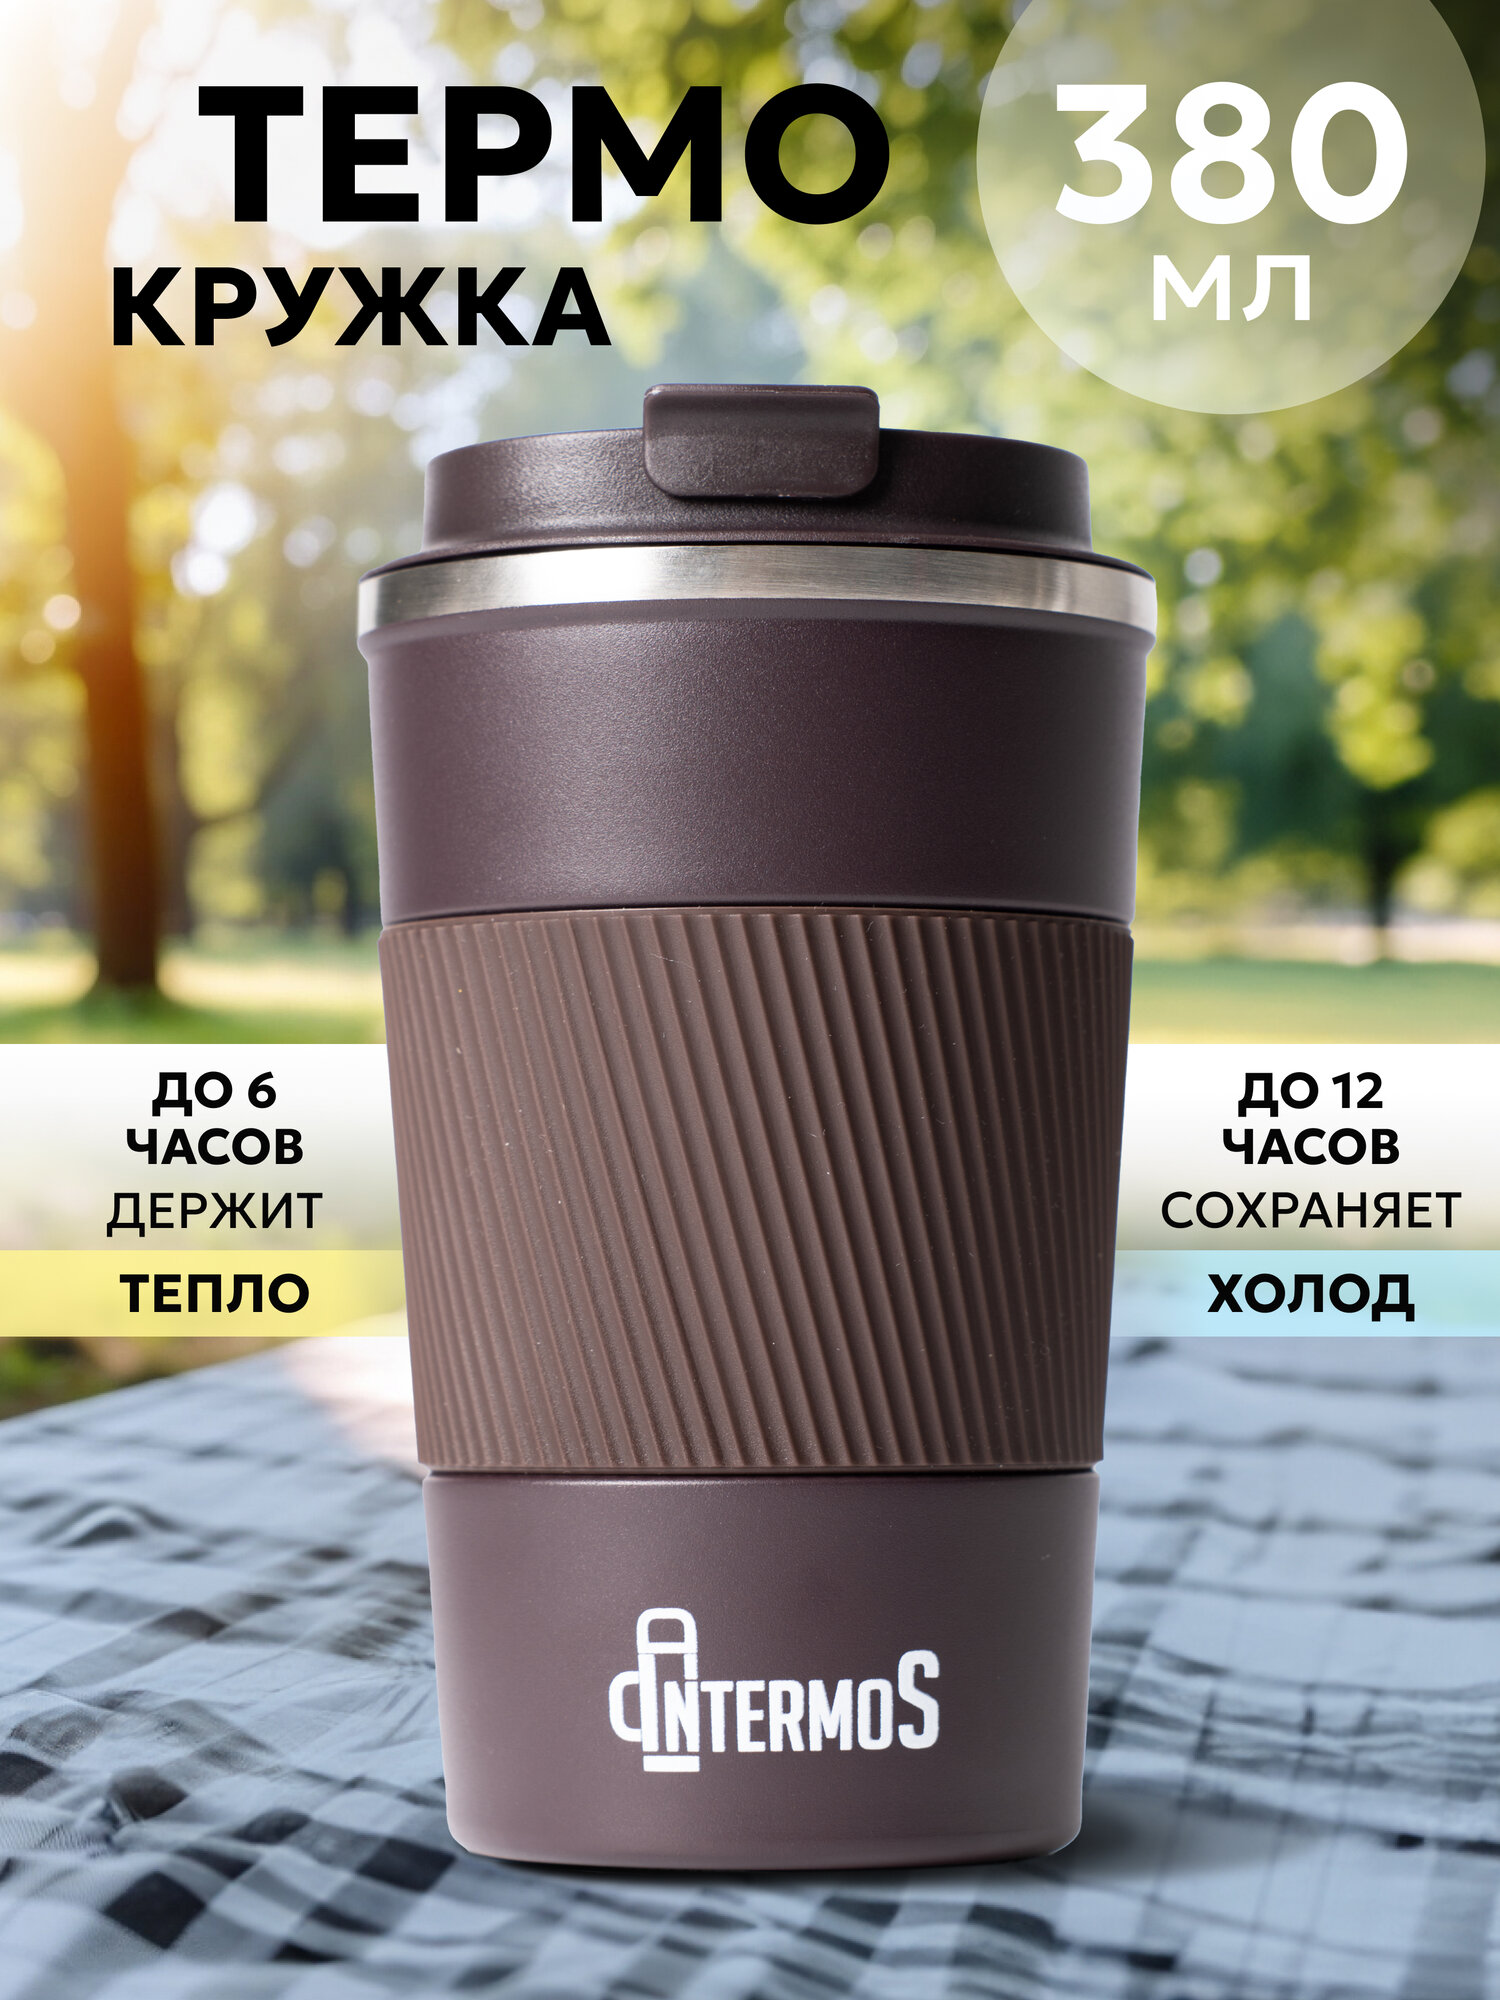 Термокружка "Intermos" для кофе и чая 380 мл, из нержавеющей стали, цвет коричневый